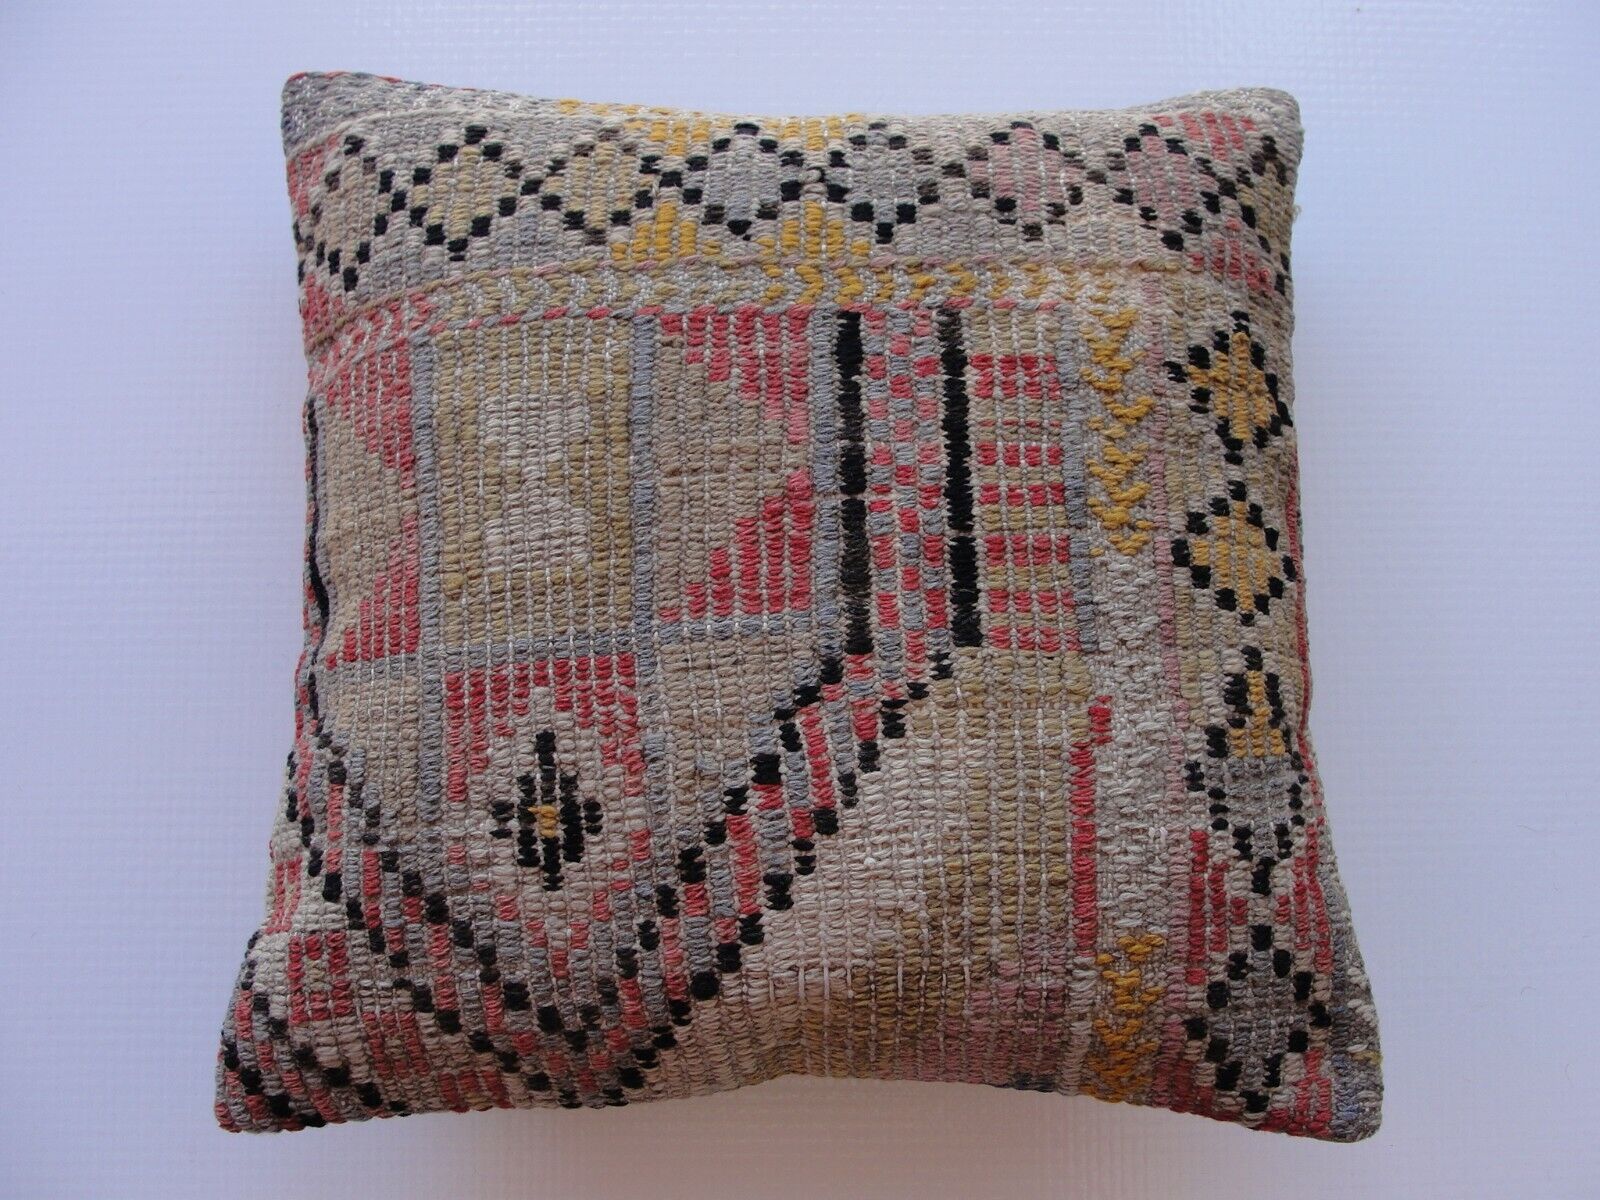 Pillow 16"x16", Home decor Cushion, Throw Pillow, kilim rugs, sofa pillow cover